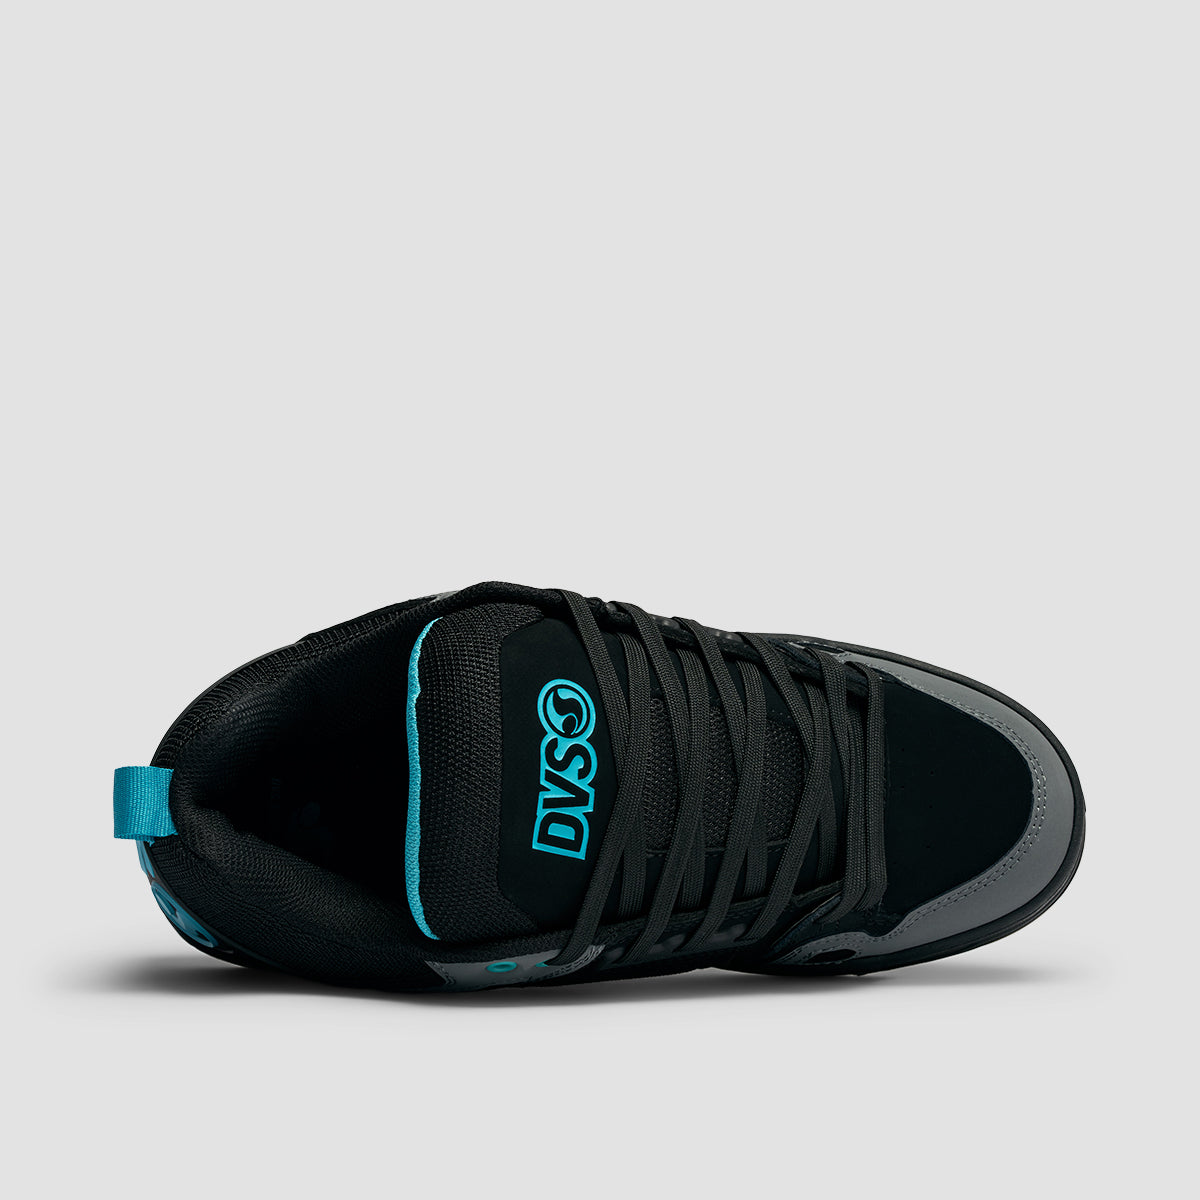 DVS Comanche Shoes - Black/Turquoise/Gum Nubuck